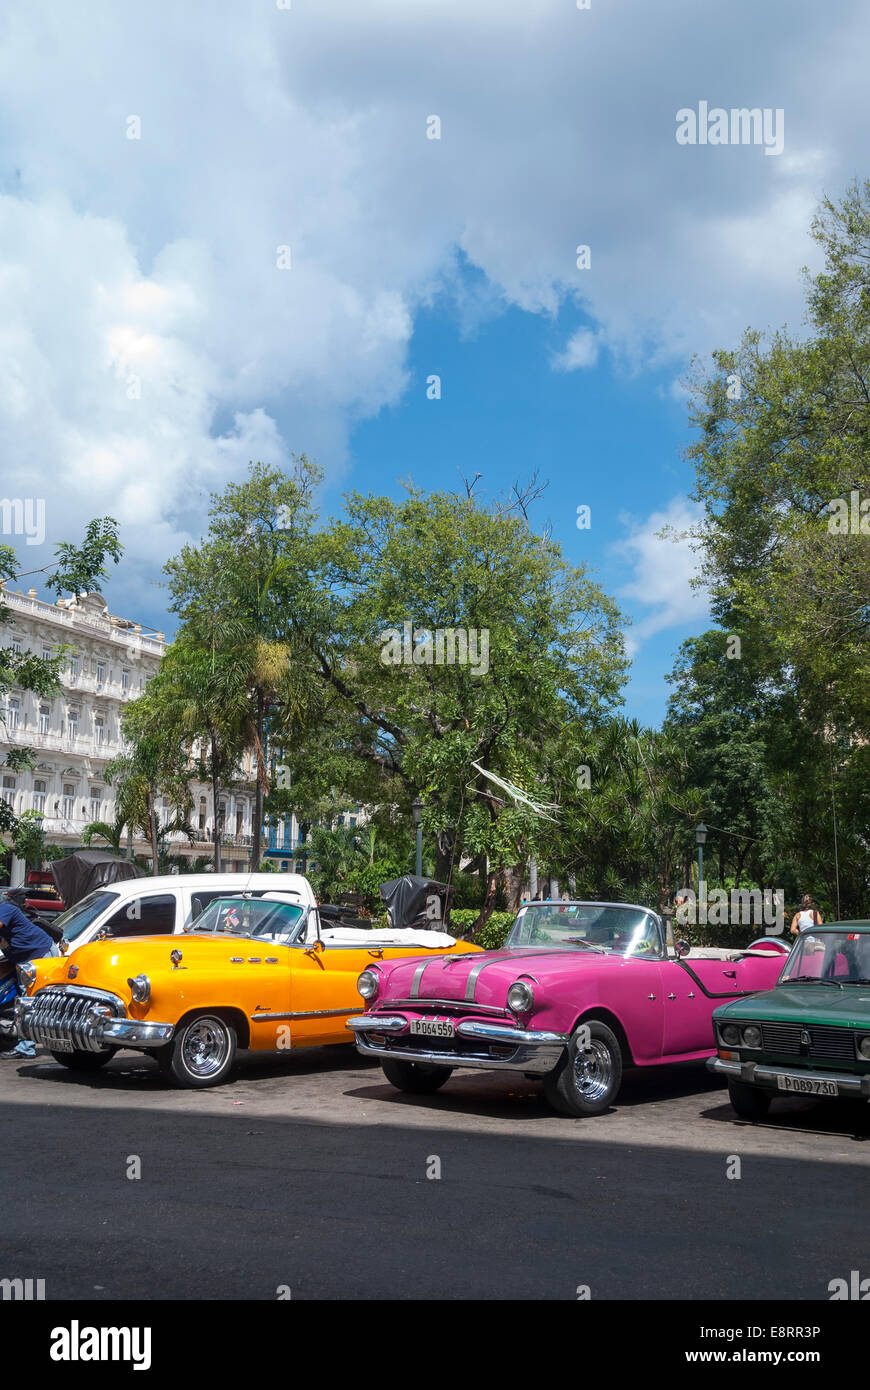 Gelb und rosa Vintage American 1950 Autos aufgereiht zu mieten wie taxis und Fahrzeuge auf dem Prado im Zentrum Havanna Kuba-tour Stockfoto